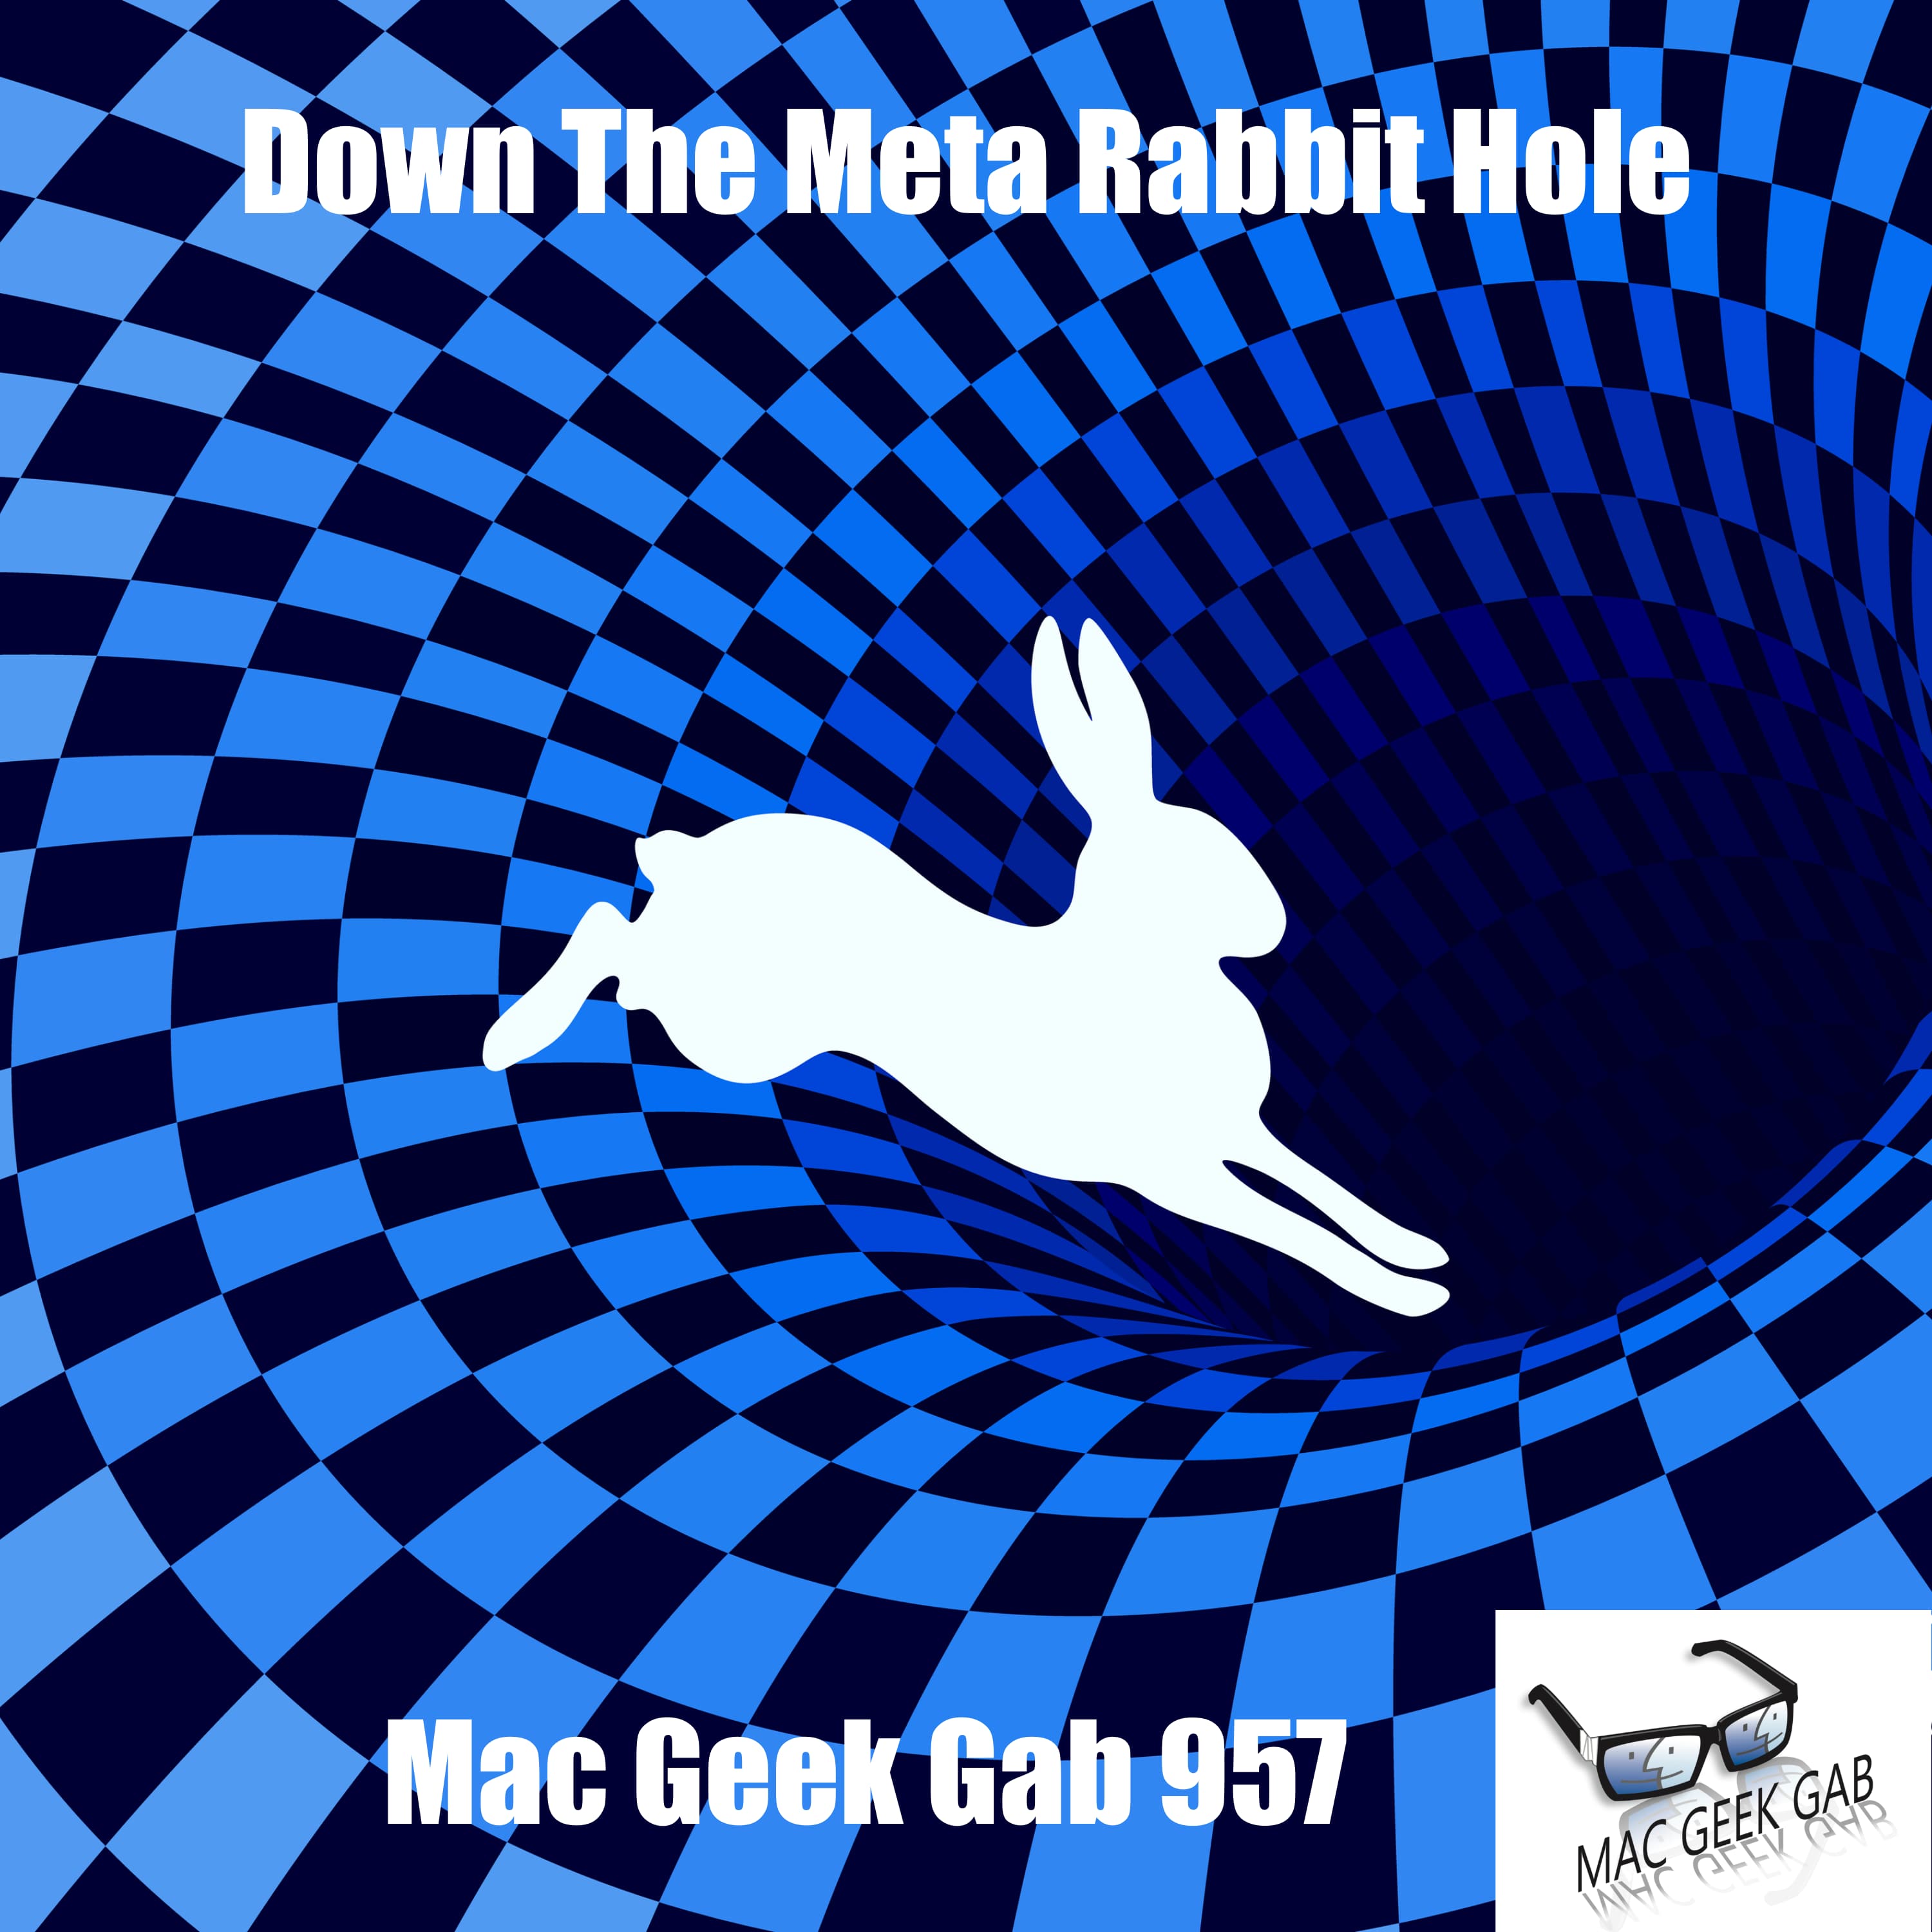 Down The Meta Rabbit Hole – Mac Geek Gab 957 episode image